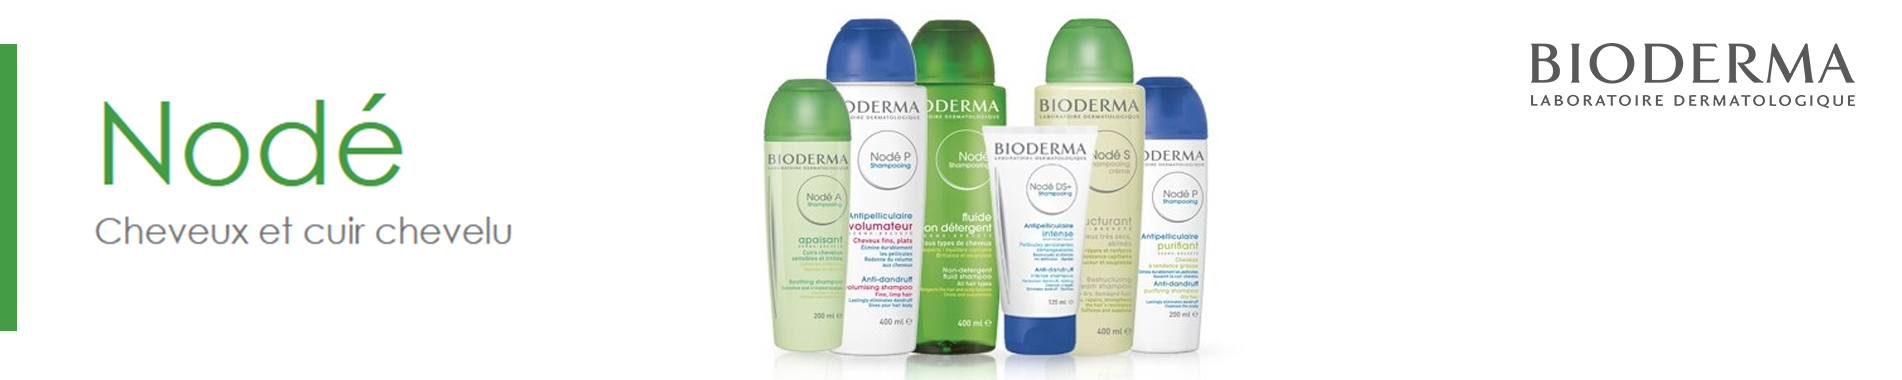 La gamme Nodé pour les cheveux et le cuir chevelu de Bioderma